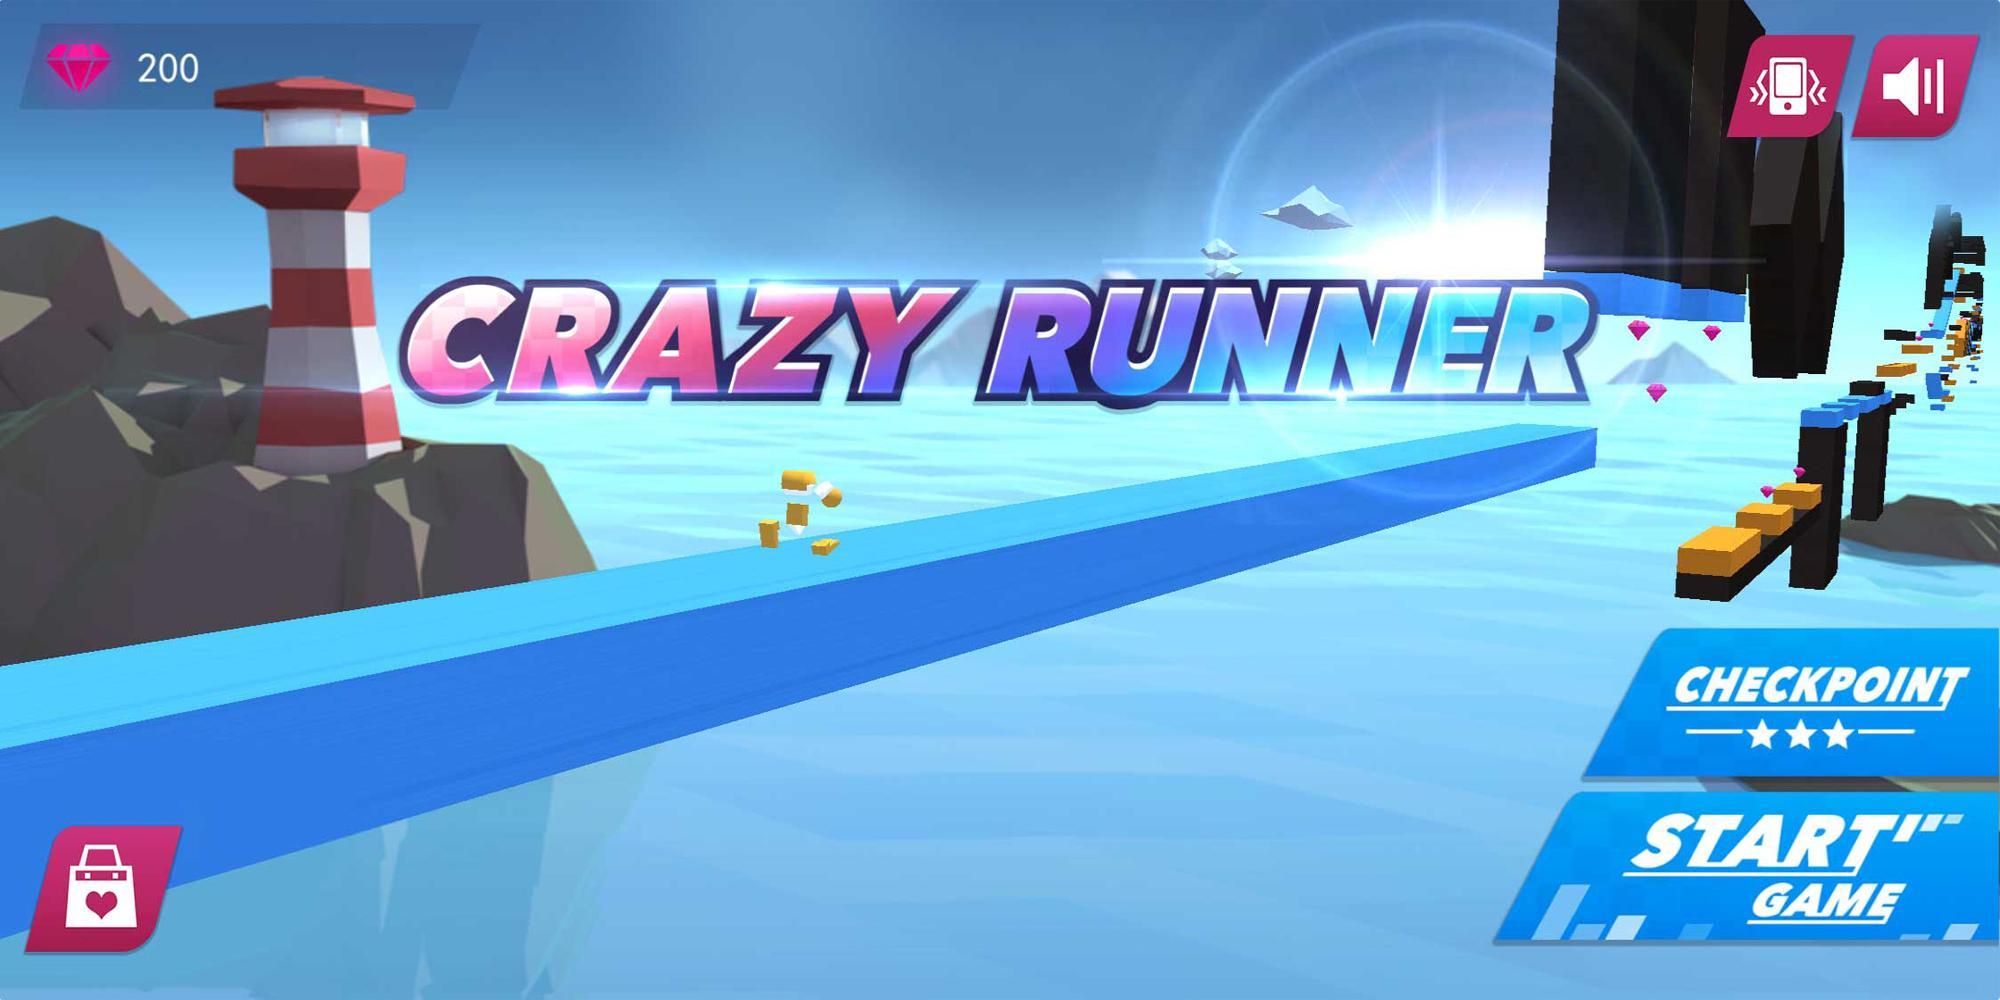 Screenshot 1 of Crazy Runner 1.0.1